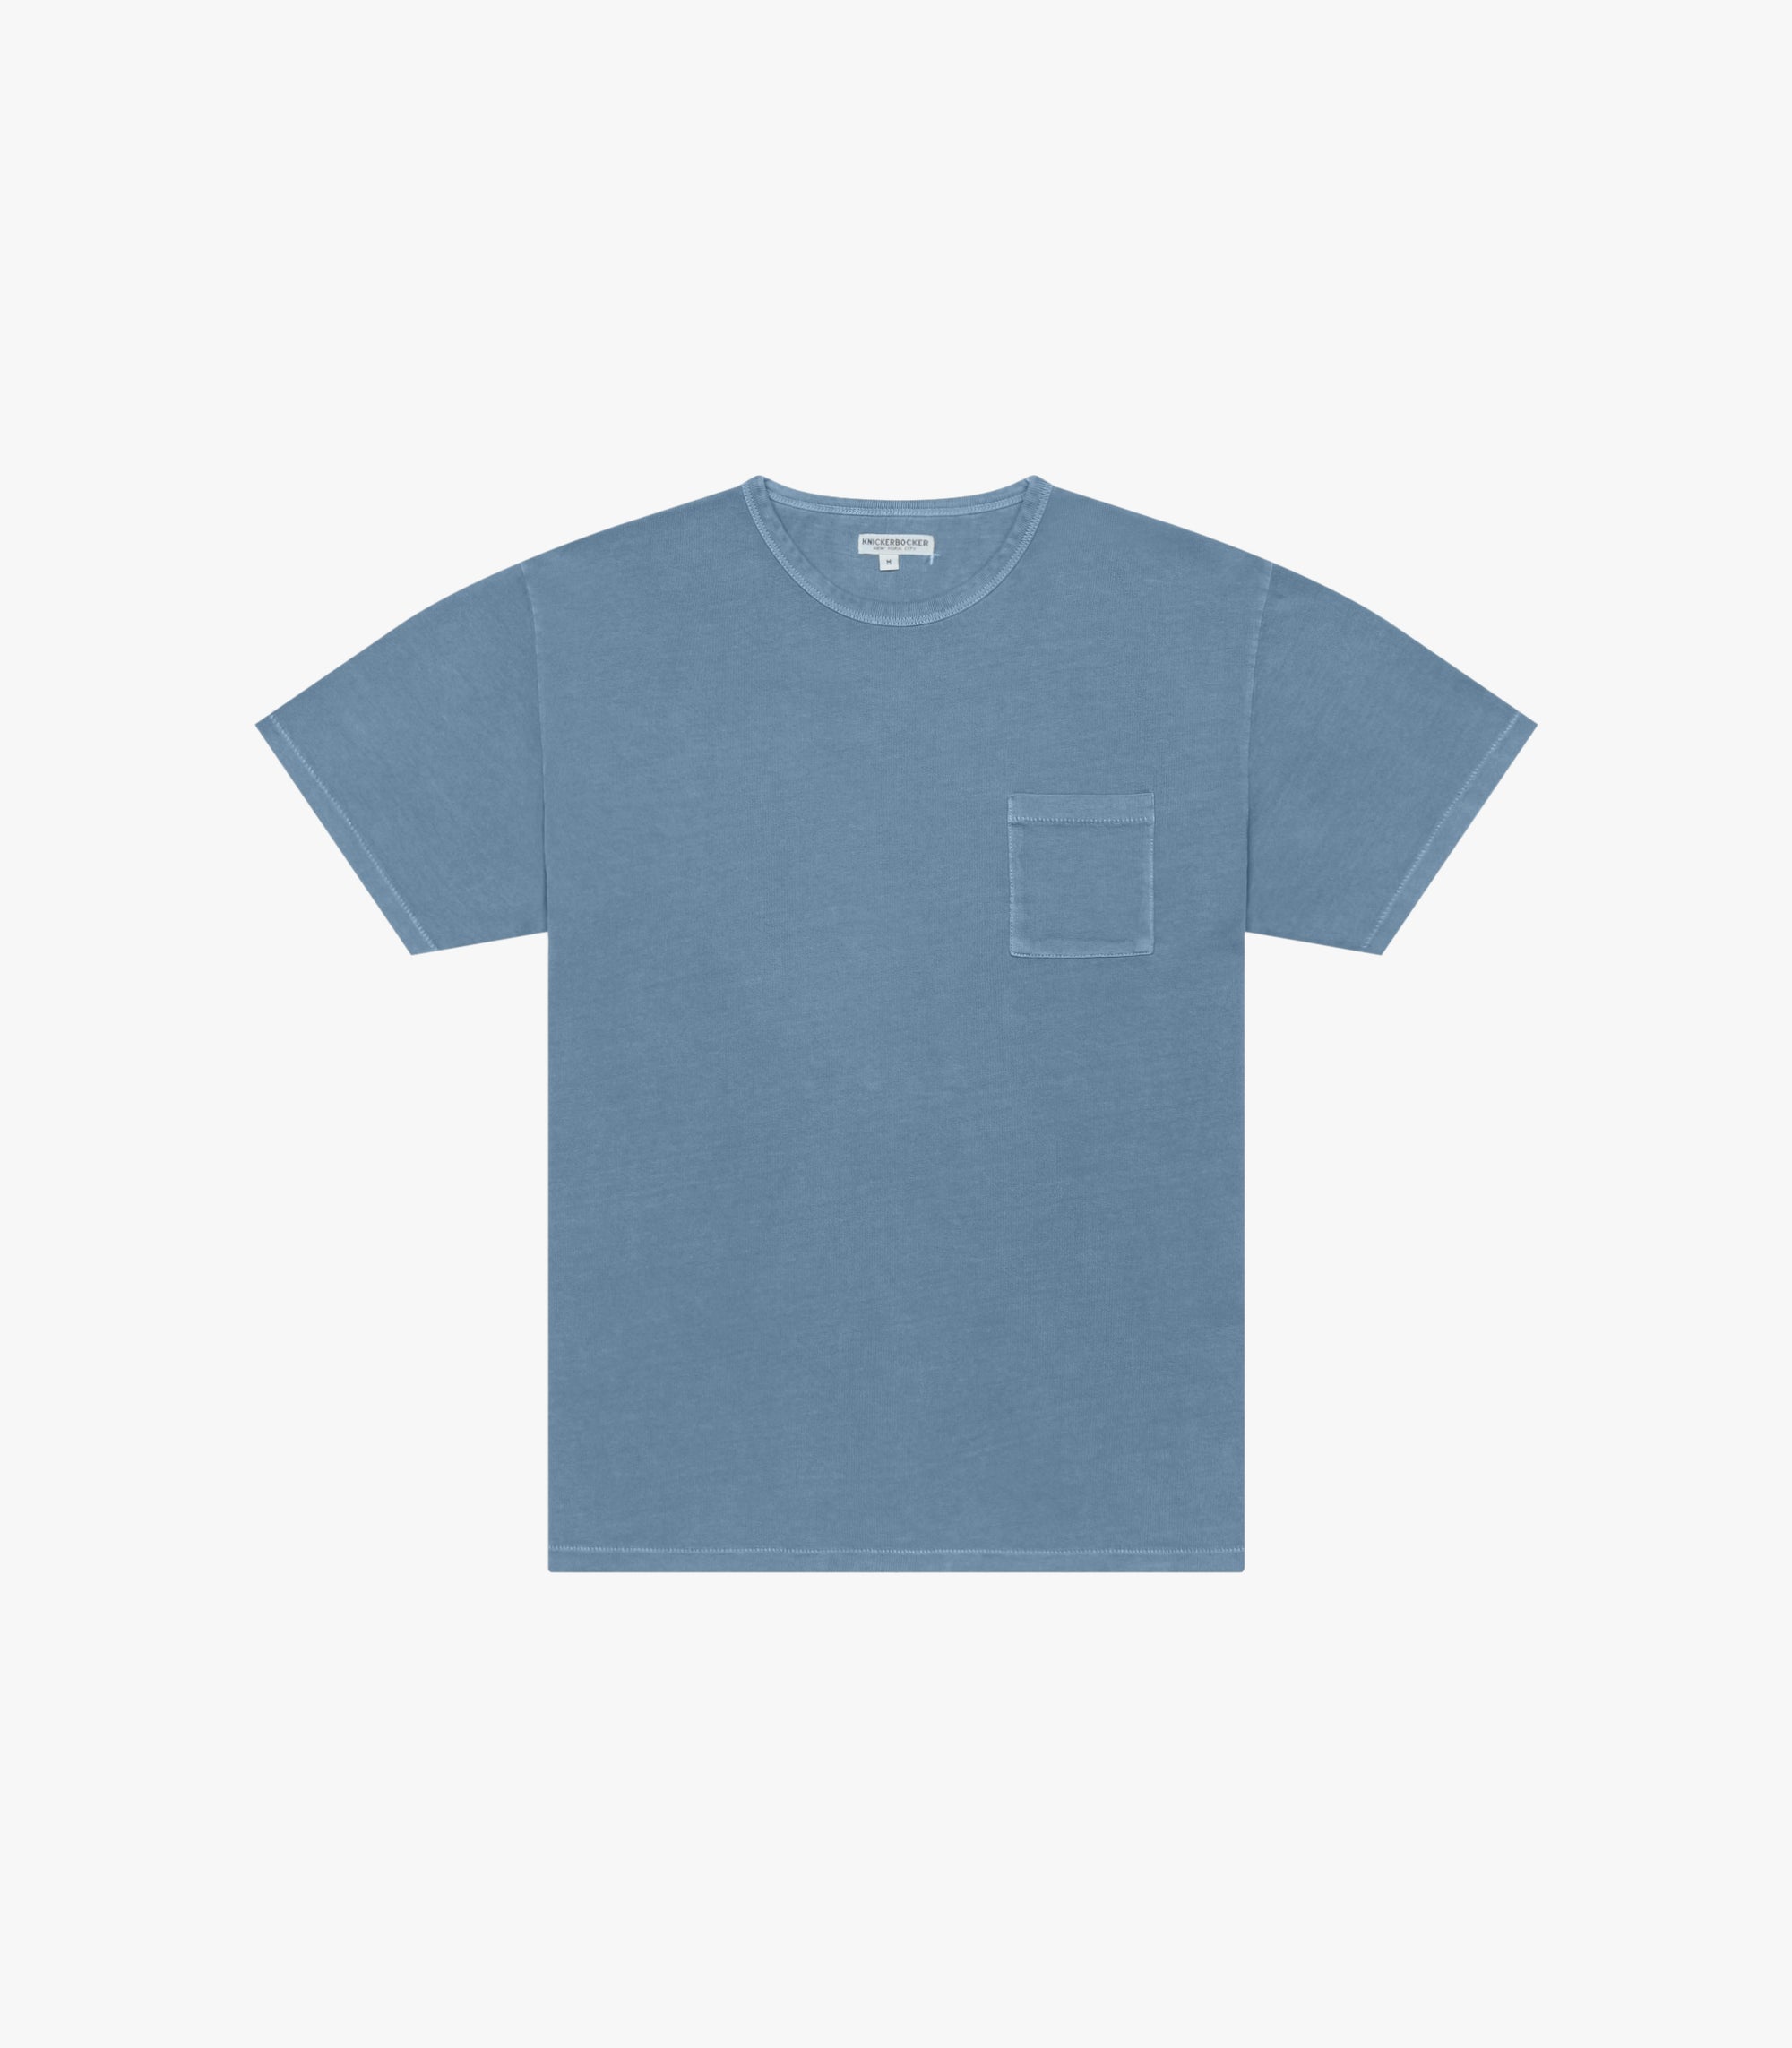 Knickerbocker Pocket T-Shirt - Pigment Marine